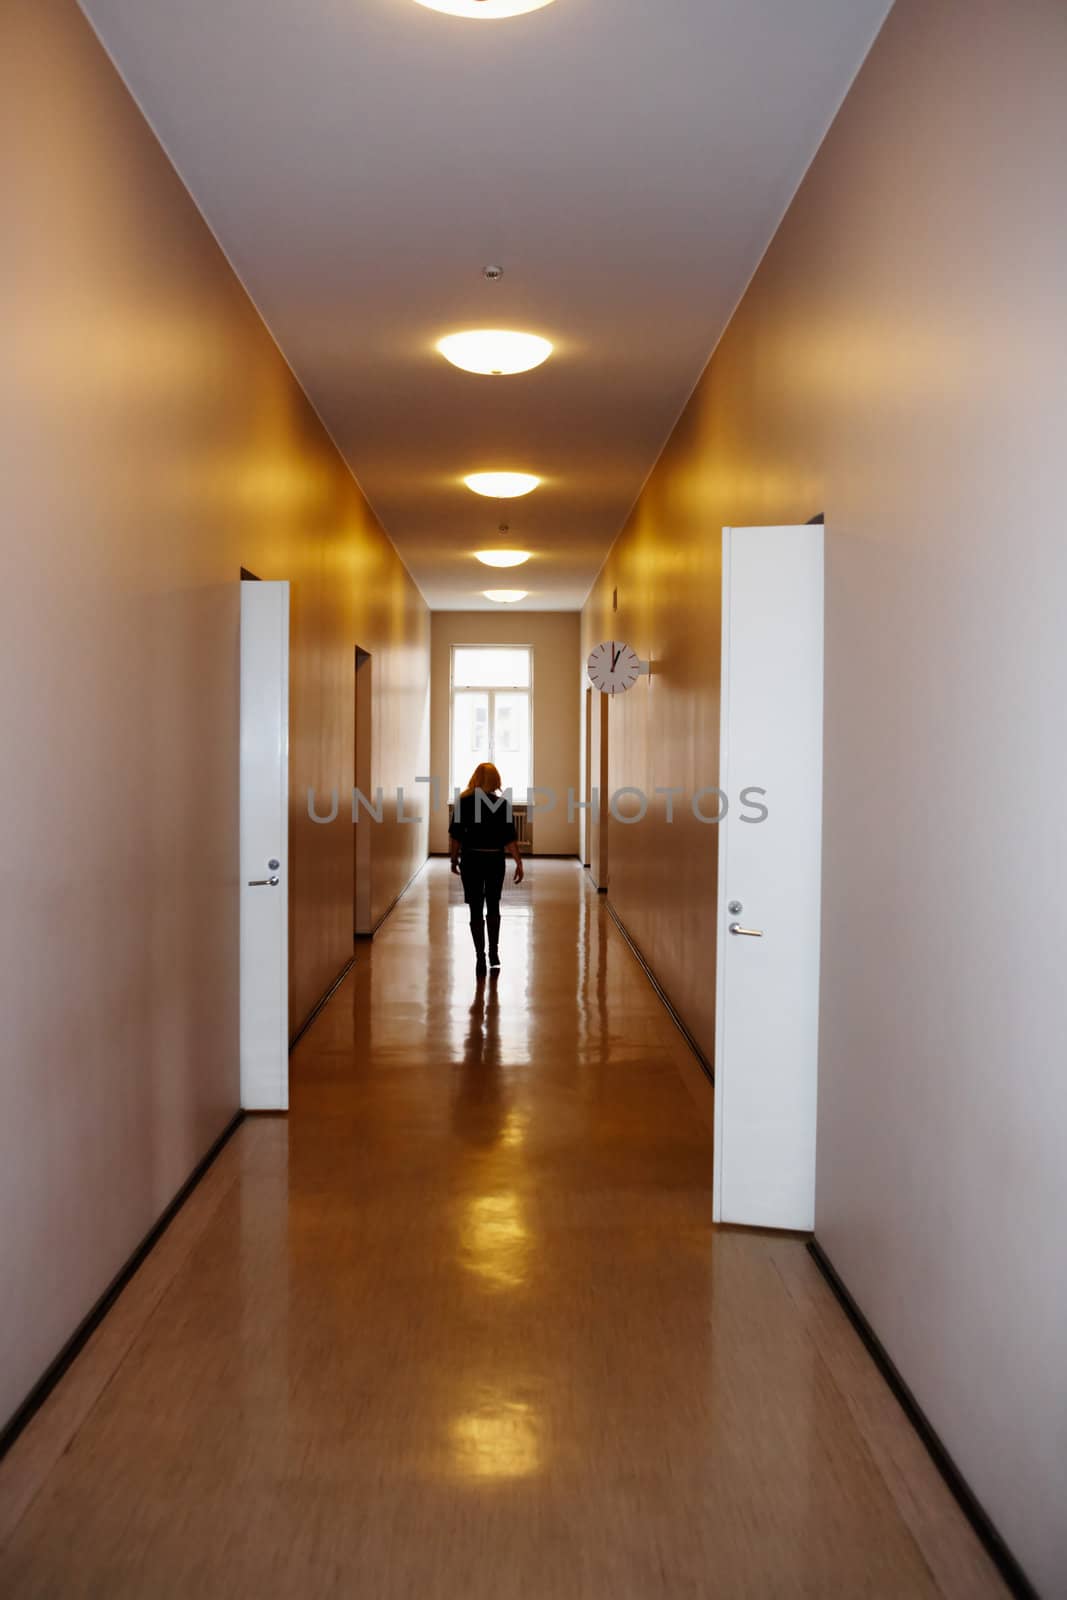 Woman in corridor, walking away, open doors